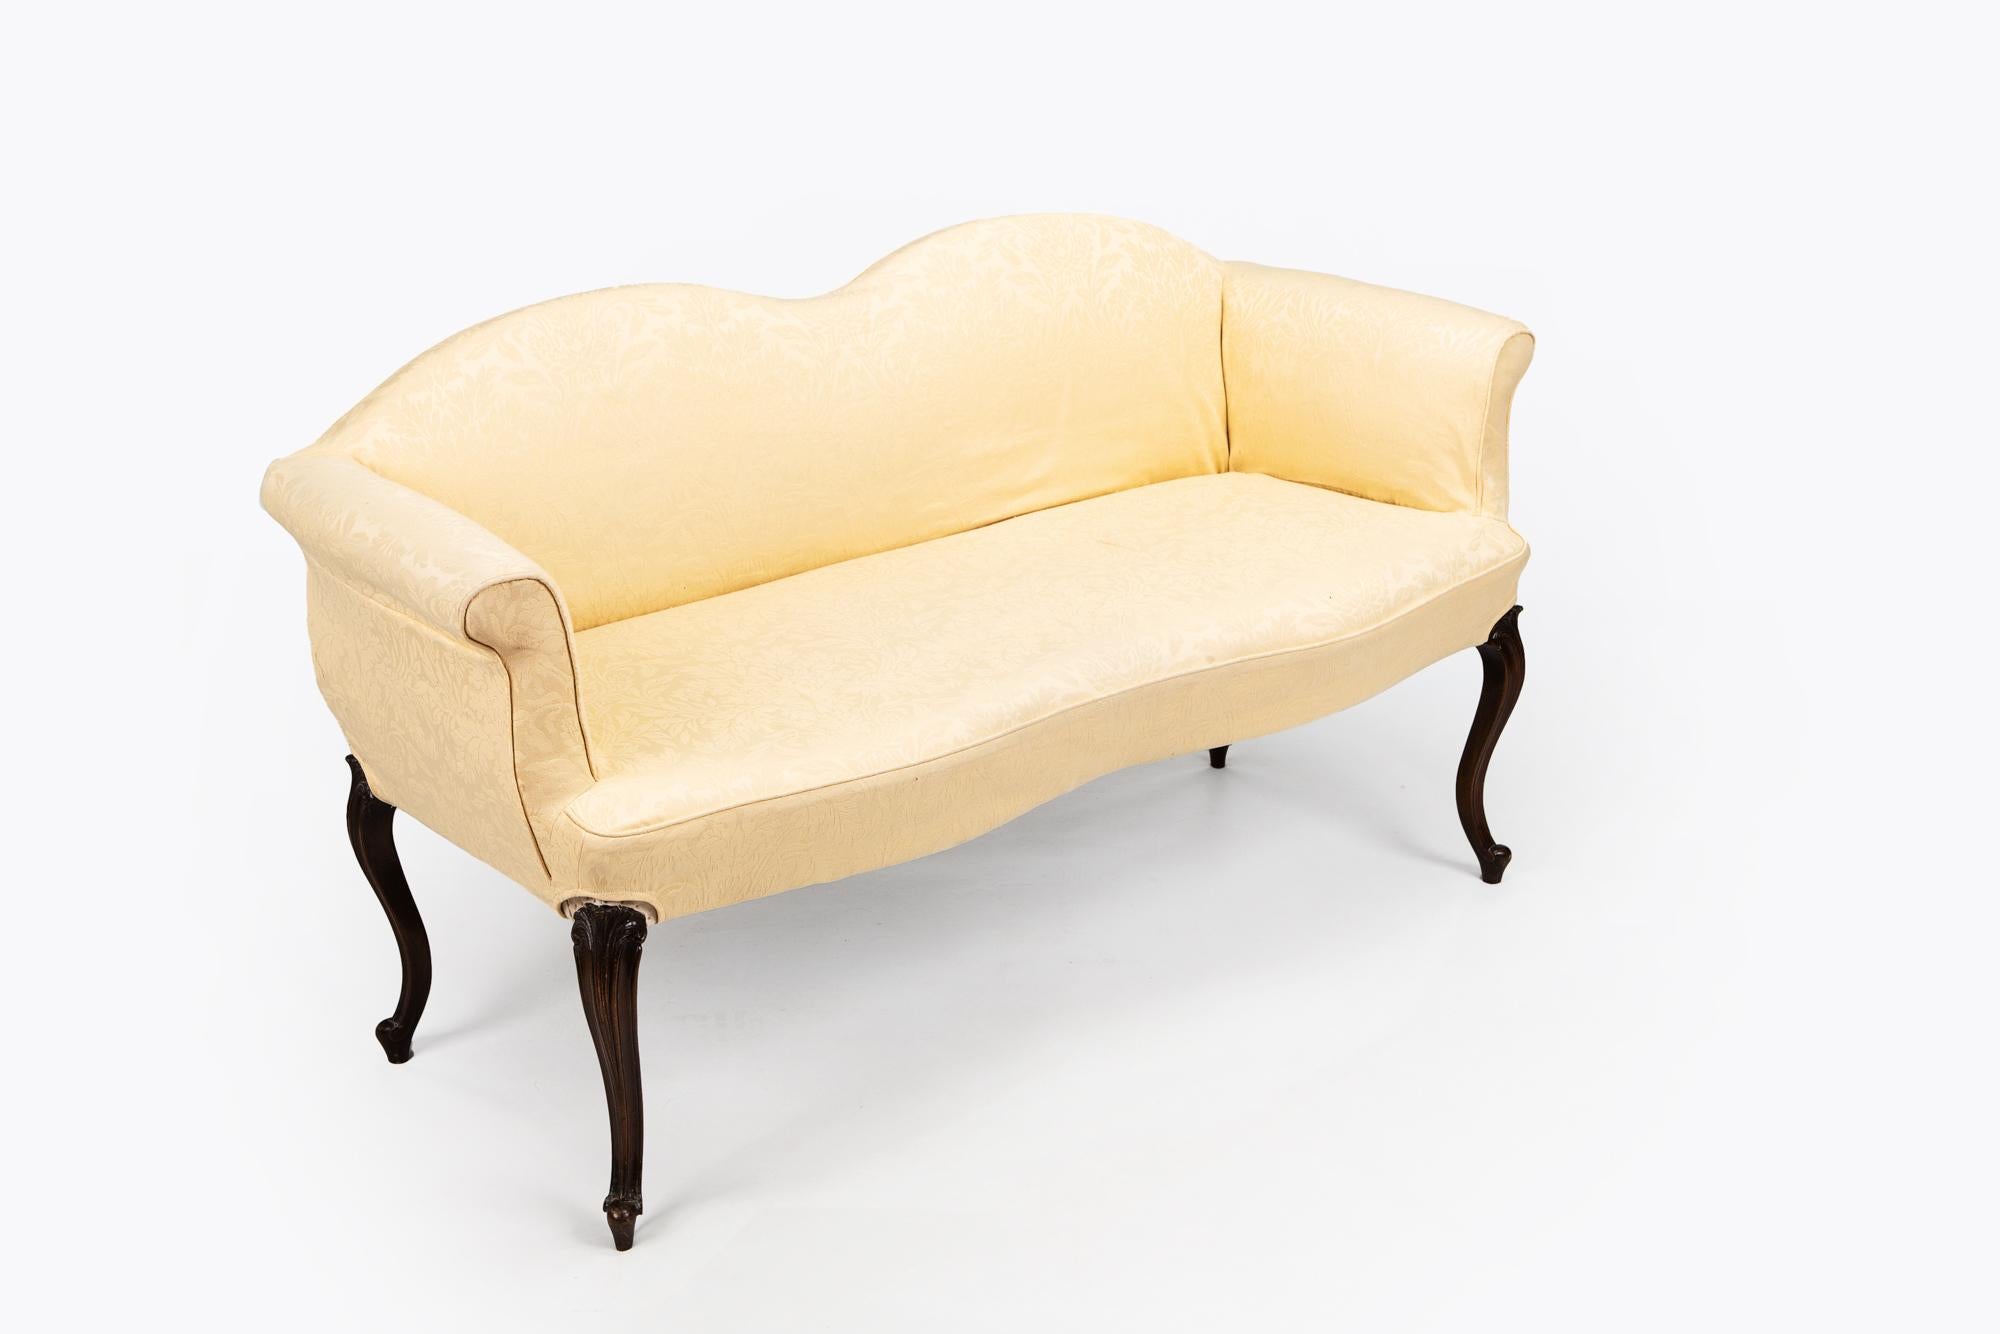 Regency-Sofa des frühen 19. Jahrhunderts in der Art von George Hepplewhite, mit schlangenförmiger Rückenlehne, die sich über ausladenden Armen über einem schlangenförmigen Sitz erhebt, der von einem Cabriole-Bein getragen wird, das auf einem